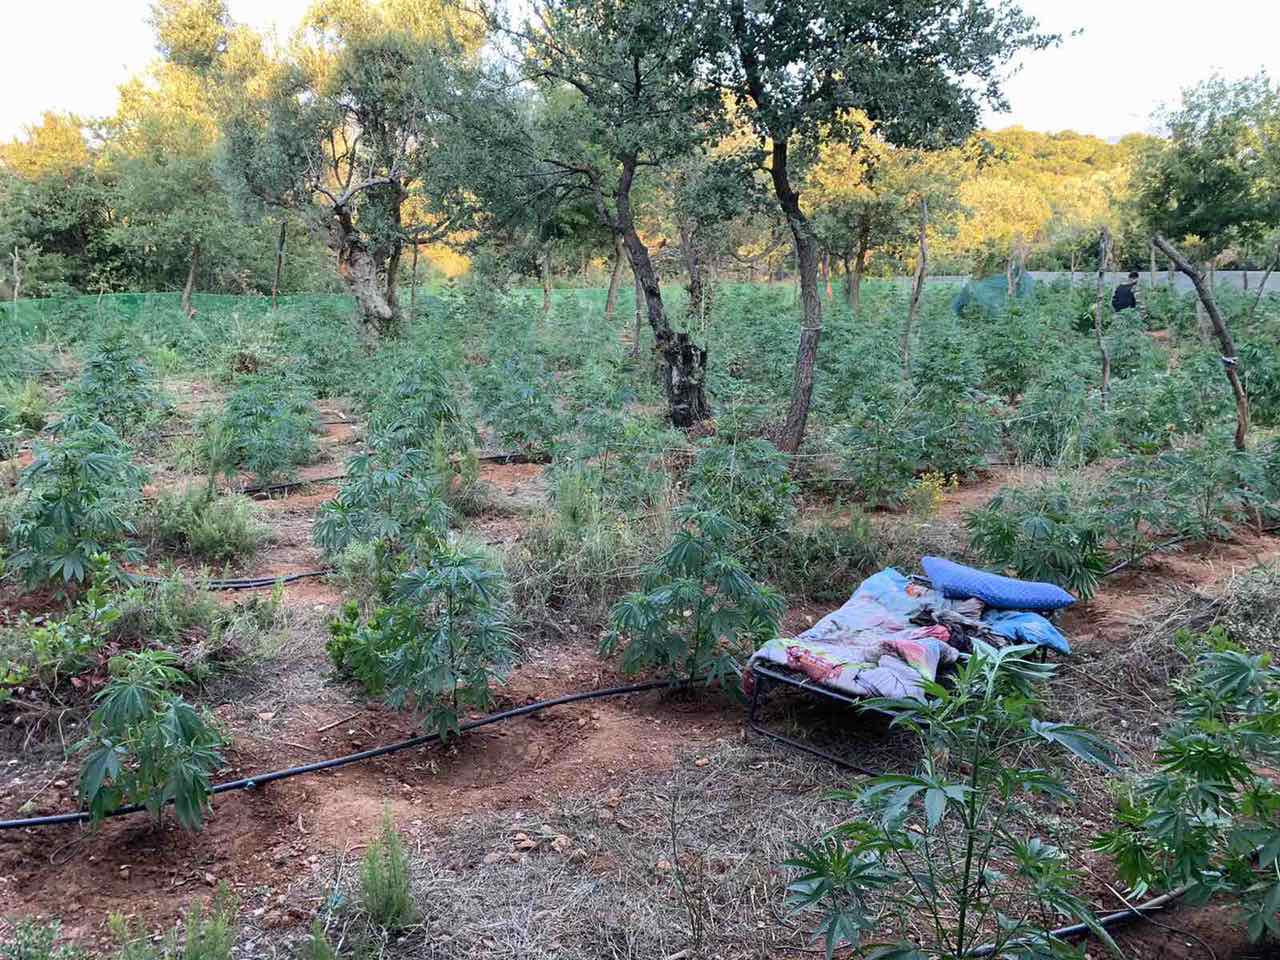 συνελήφθησαν δυο άτομα που καλλιεργούσαν 640 δενδρύλλια κάνναβης στον ταΰγετο, τραυμάτισαν δύο αστυνομικούς 1